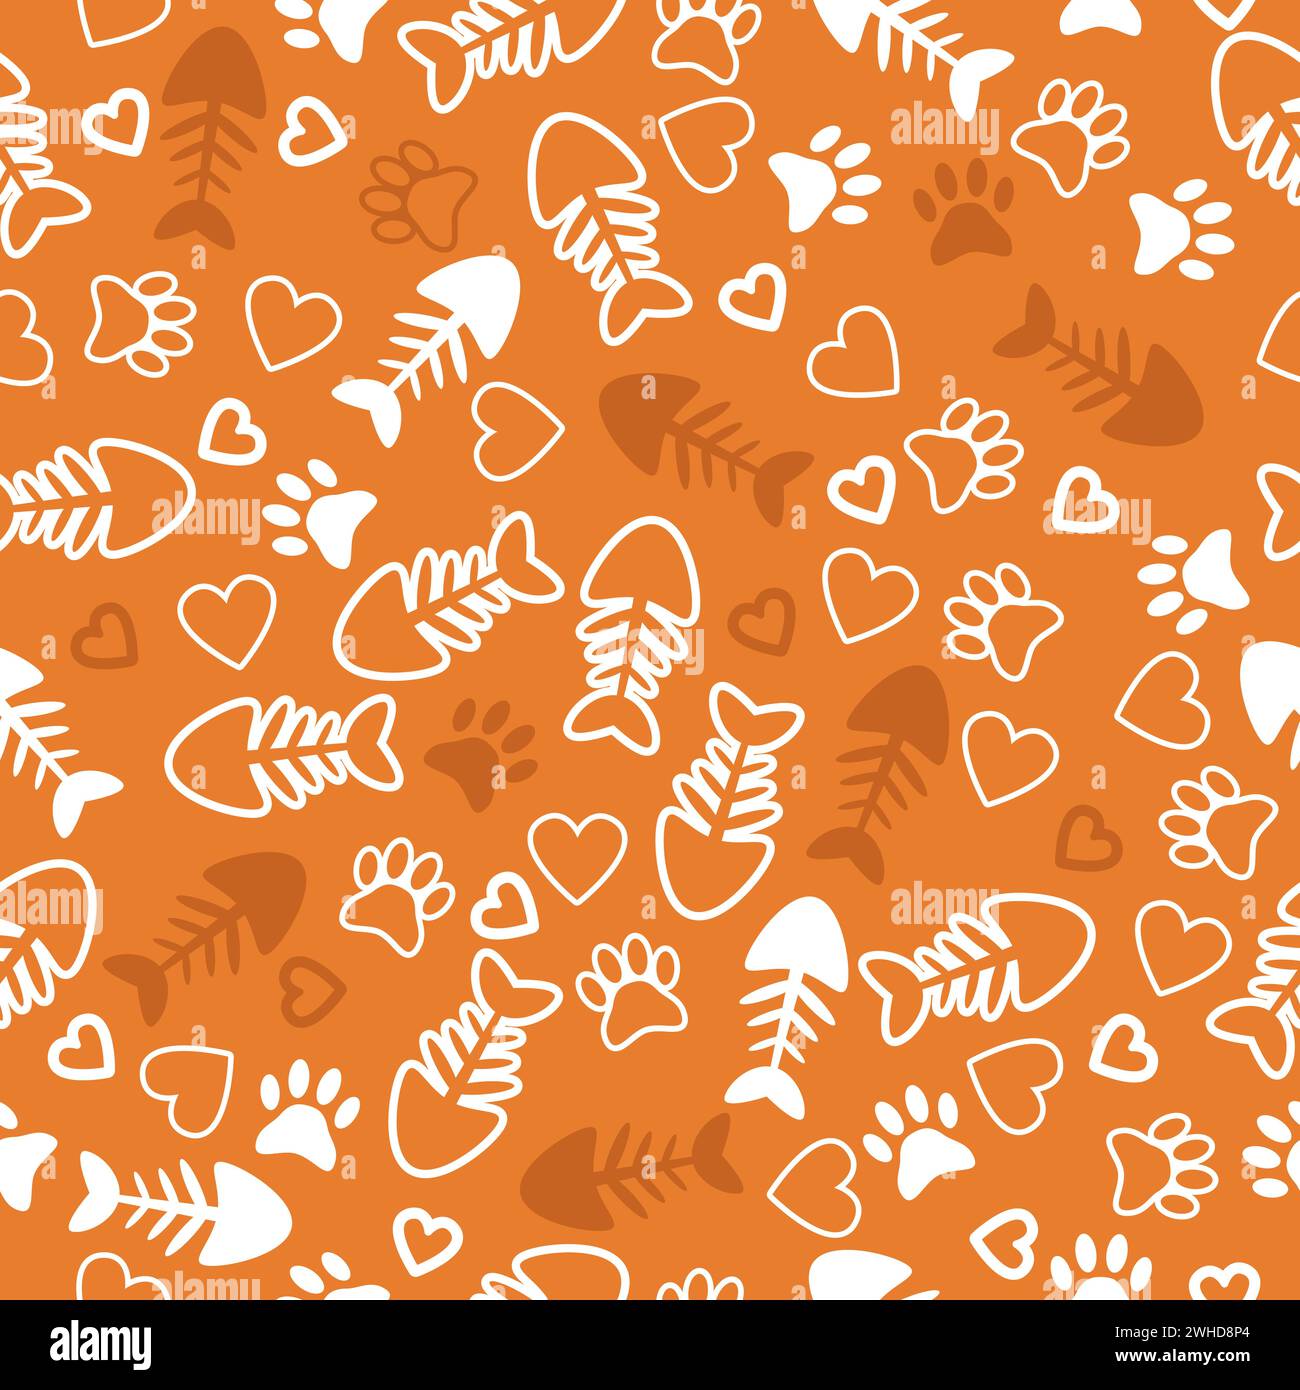 Modèle sans couture avec des empreintes de pattes de chat, os de poisson et coeurs. Fond orange. Illustration vectorielle Illustration de Vecteur